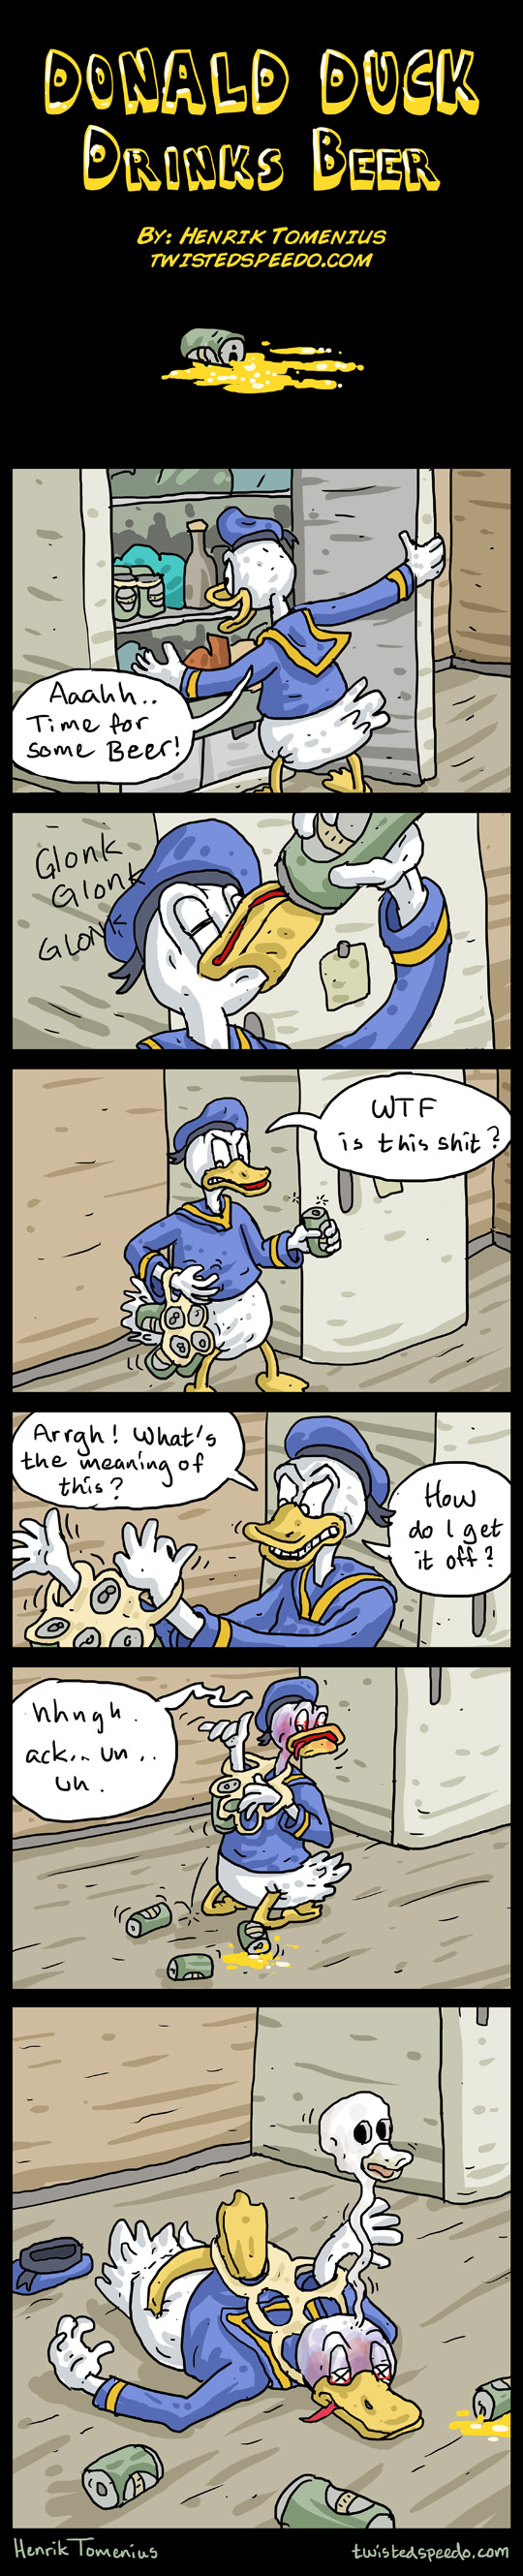 Donald Duck drinks beer